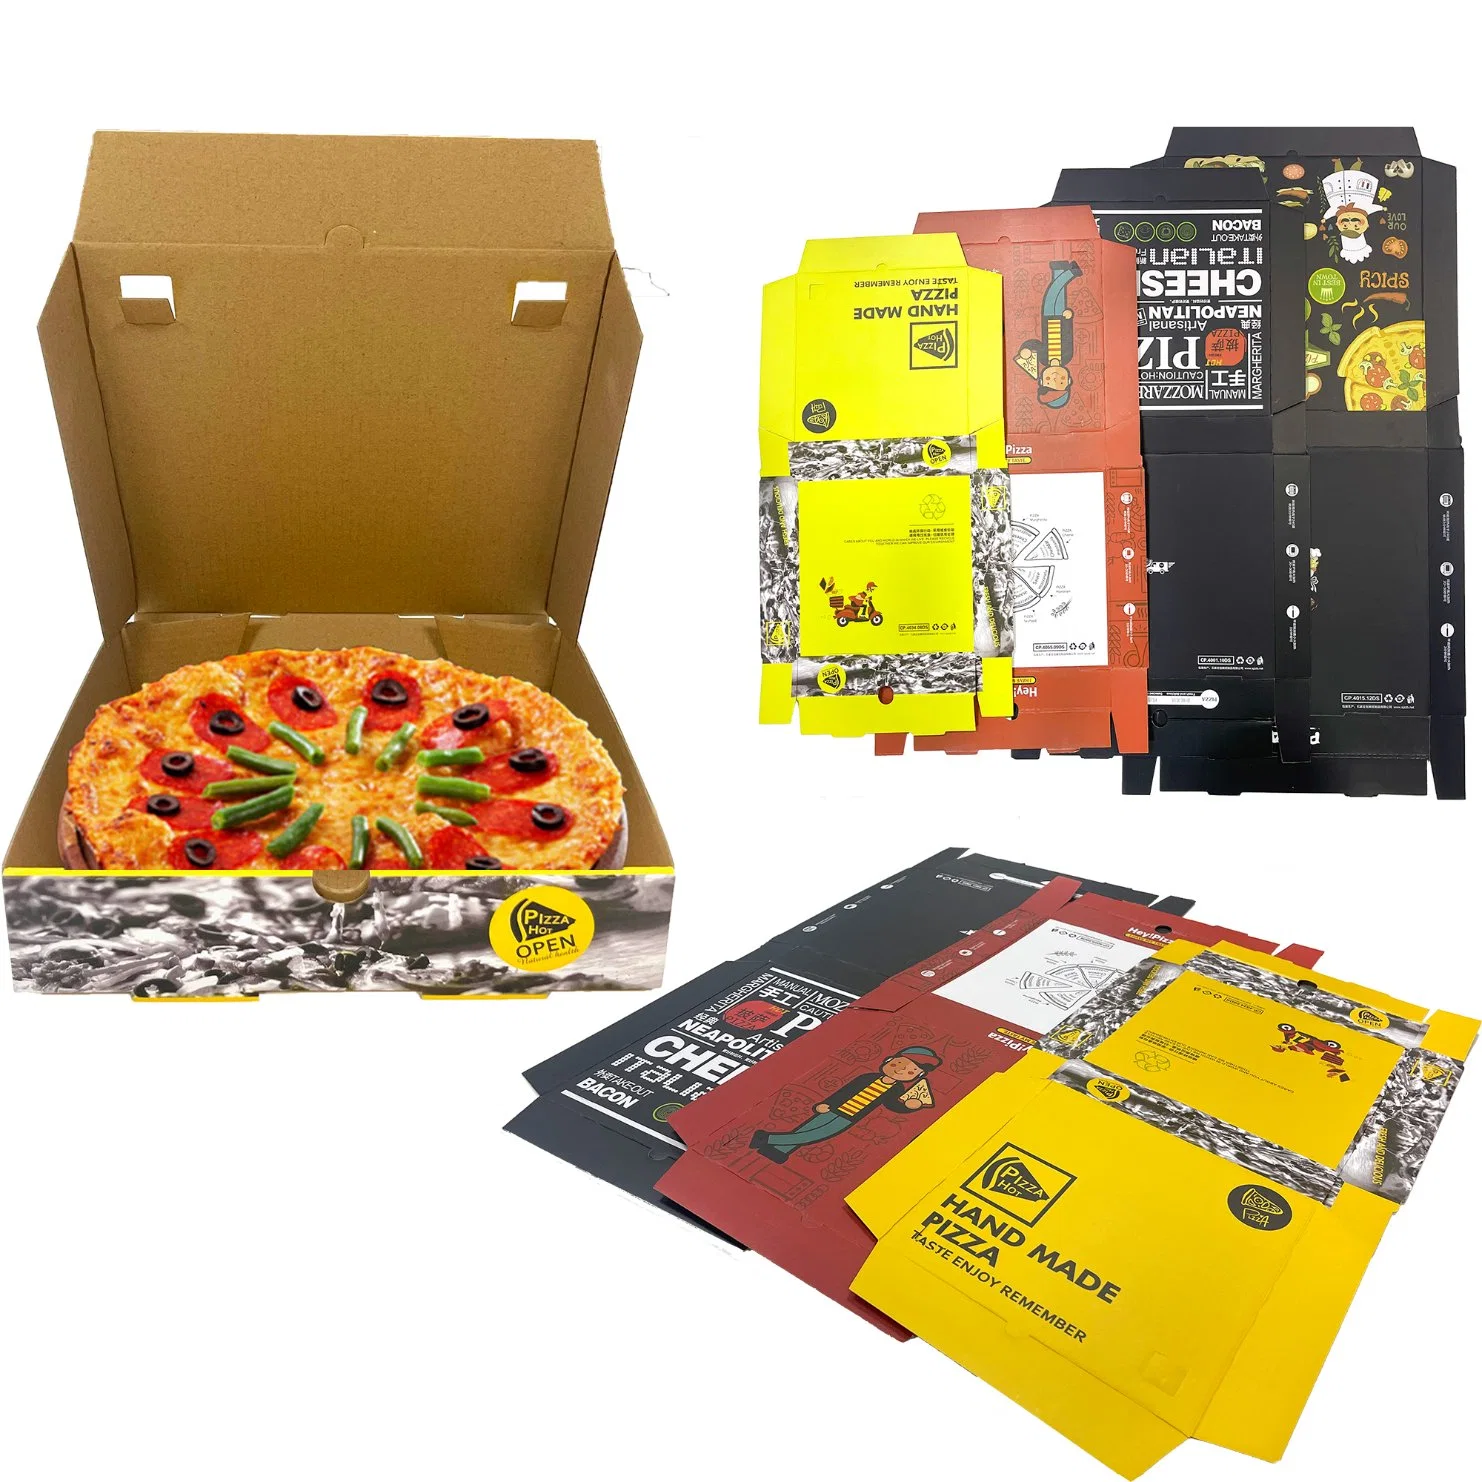 Isolierte Pizza Boxen Paket Karton Lieferant Custom Design Gedruckte Verpackung Bulk Günstige Pizza Boxen mit Logo Großhandel/Lieferant